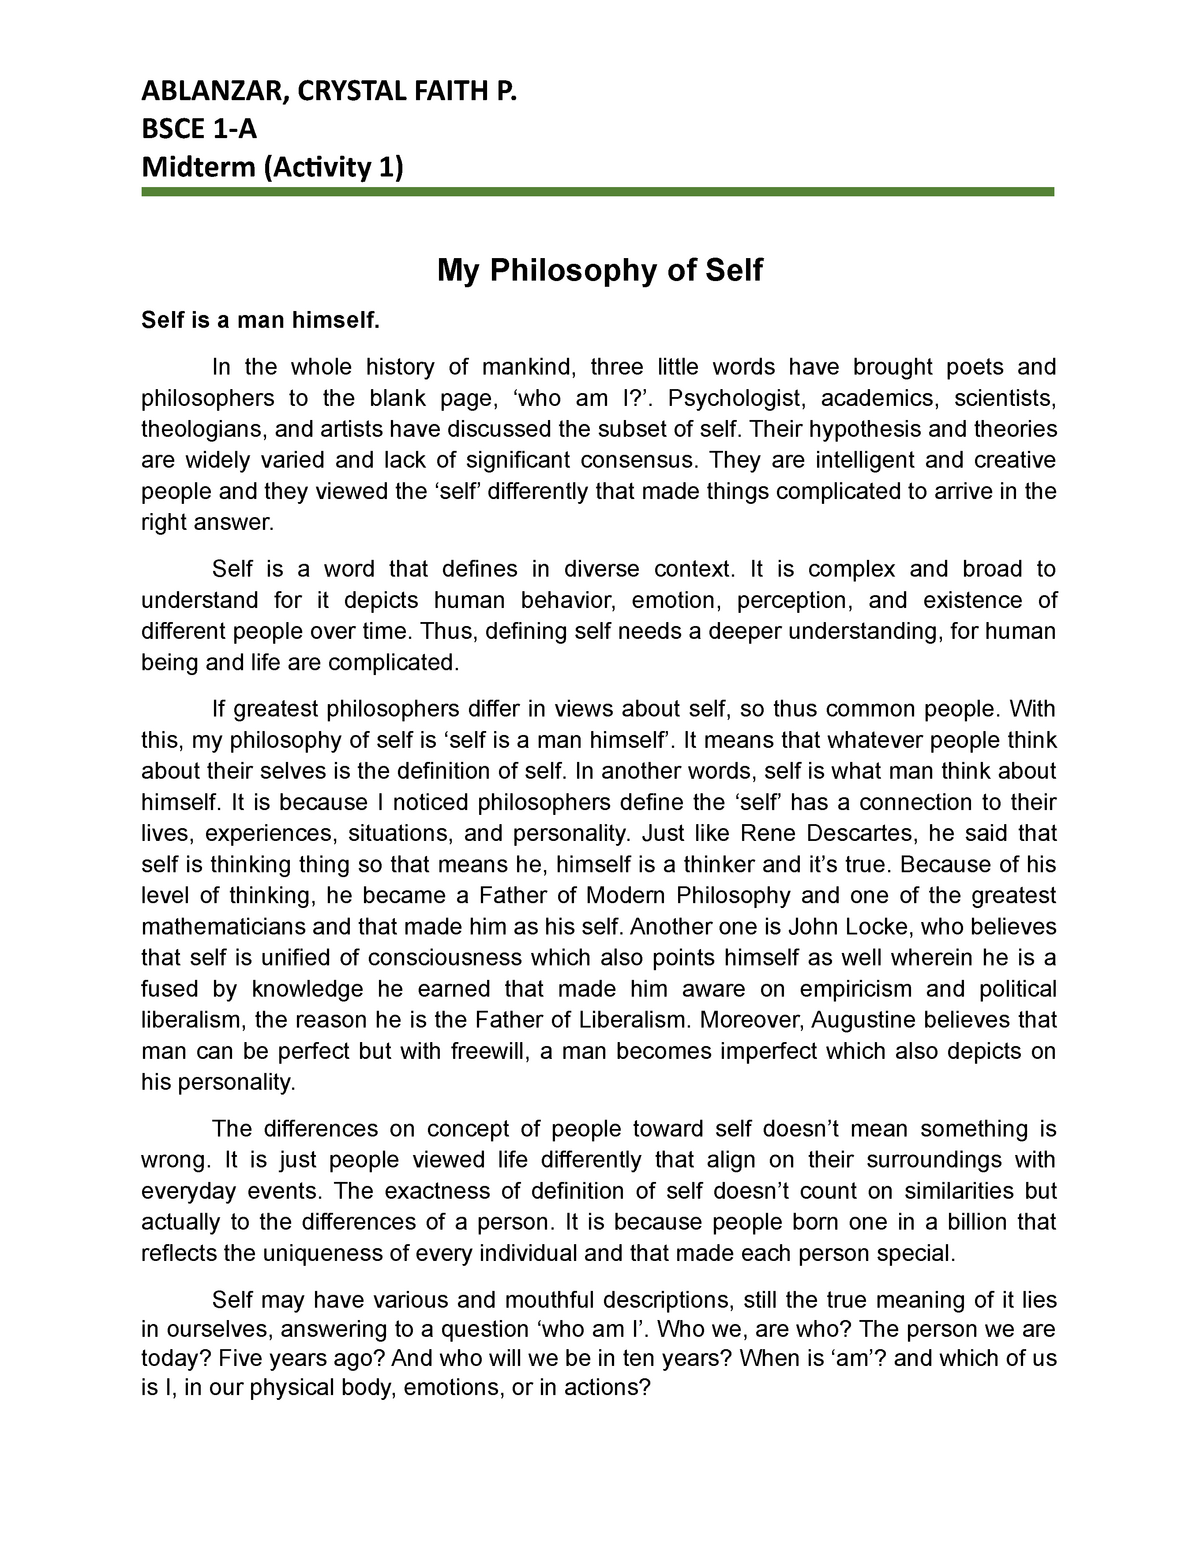 self belief essay